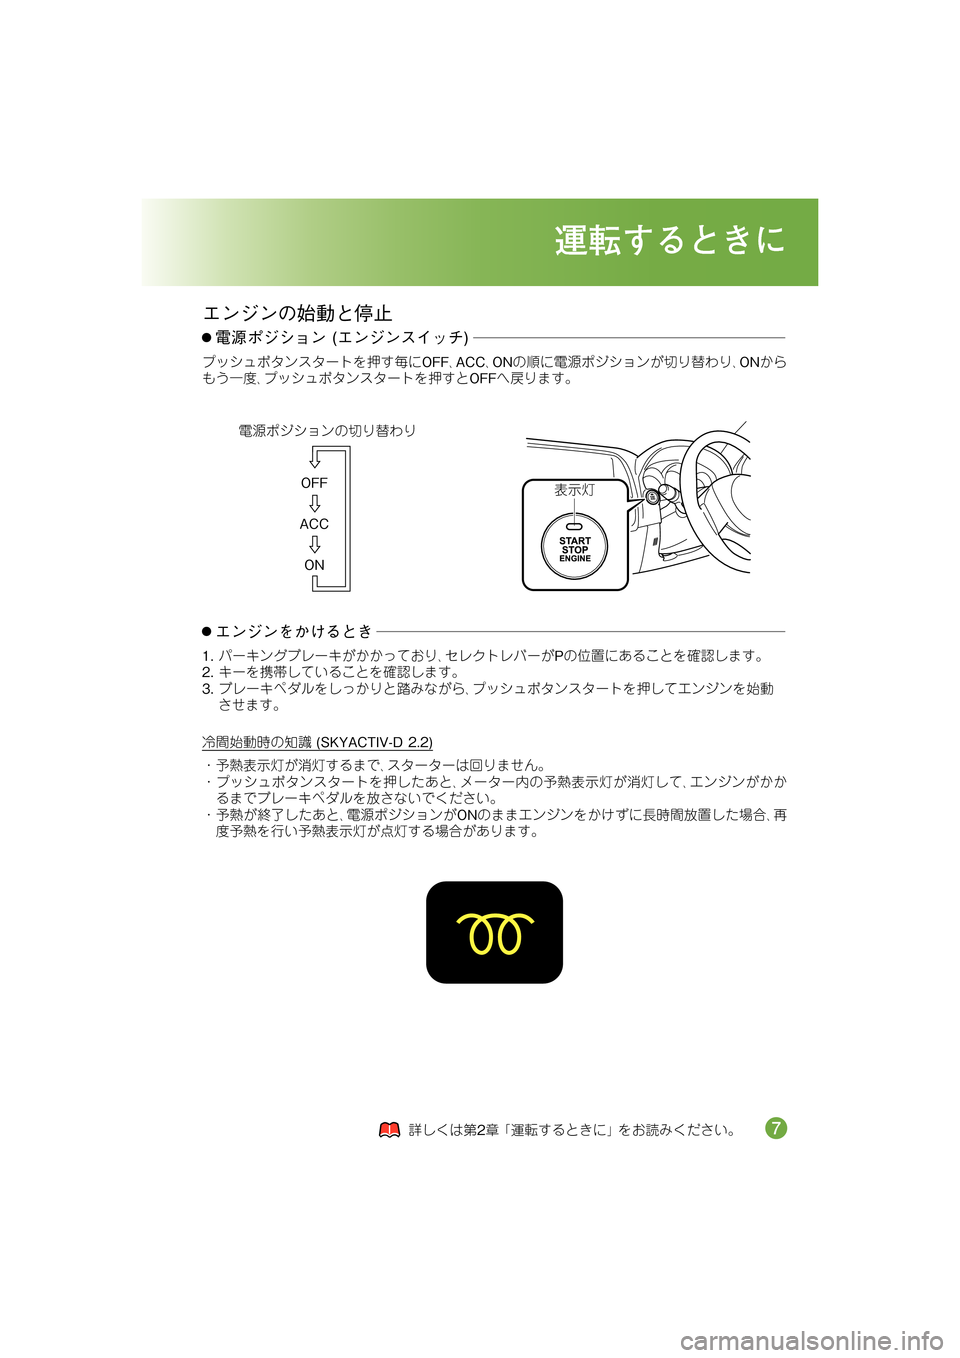 MAZDA MODEL CX-5 2012  取扱説明書 (in Japanese) �1�(�(�
�#�%�%�
�1�0�
5.P+*Zfé¾§
�
-+$.�
J6*XO2f,2o;
üÔ¤æ�1�(�(:,�#�%�%:,�1�0é5Åæ5.P+*ZfÇ¾§
:,�1�0Æ
ýÁ	û2:,J6*XO2f